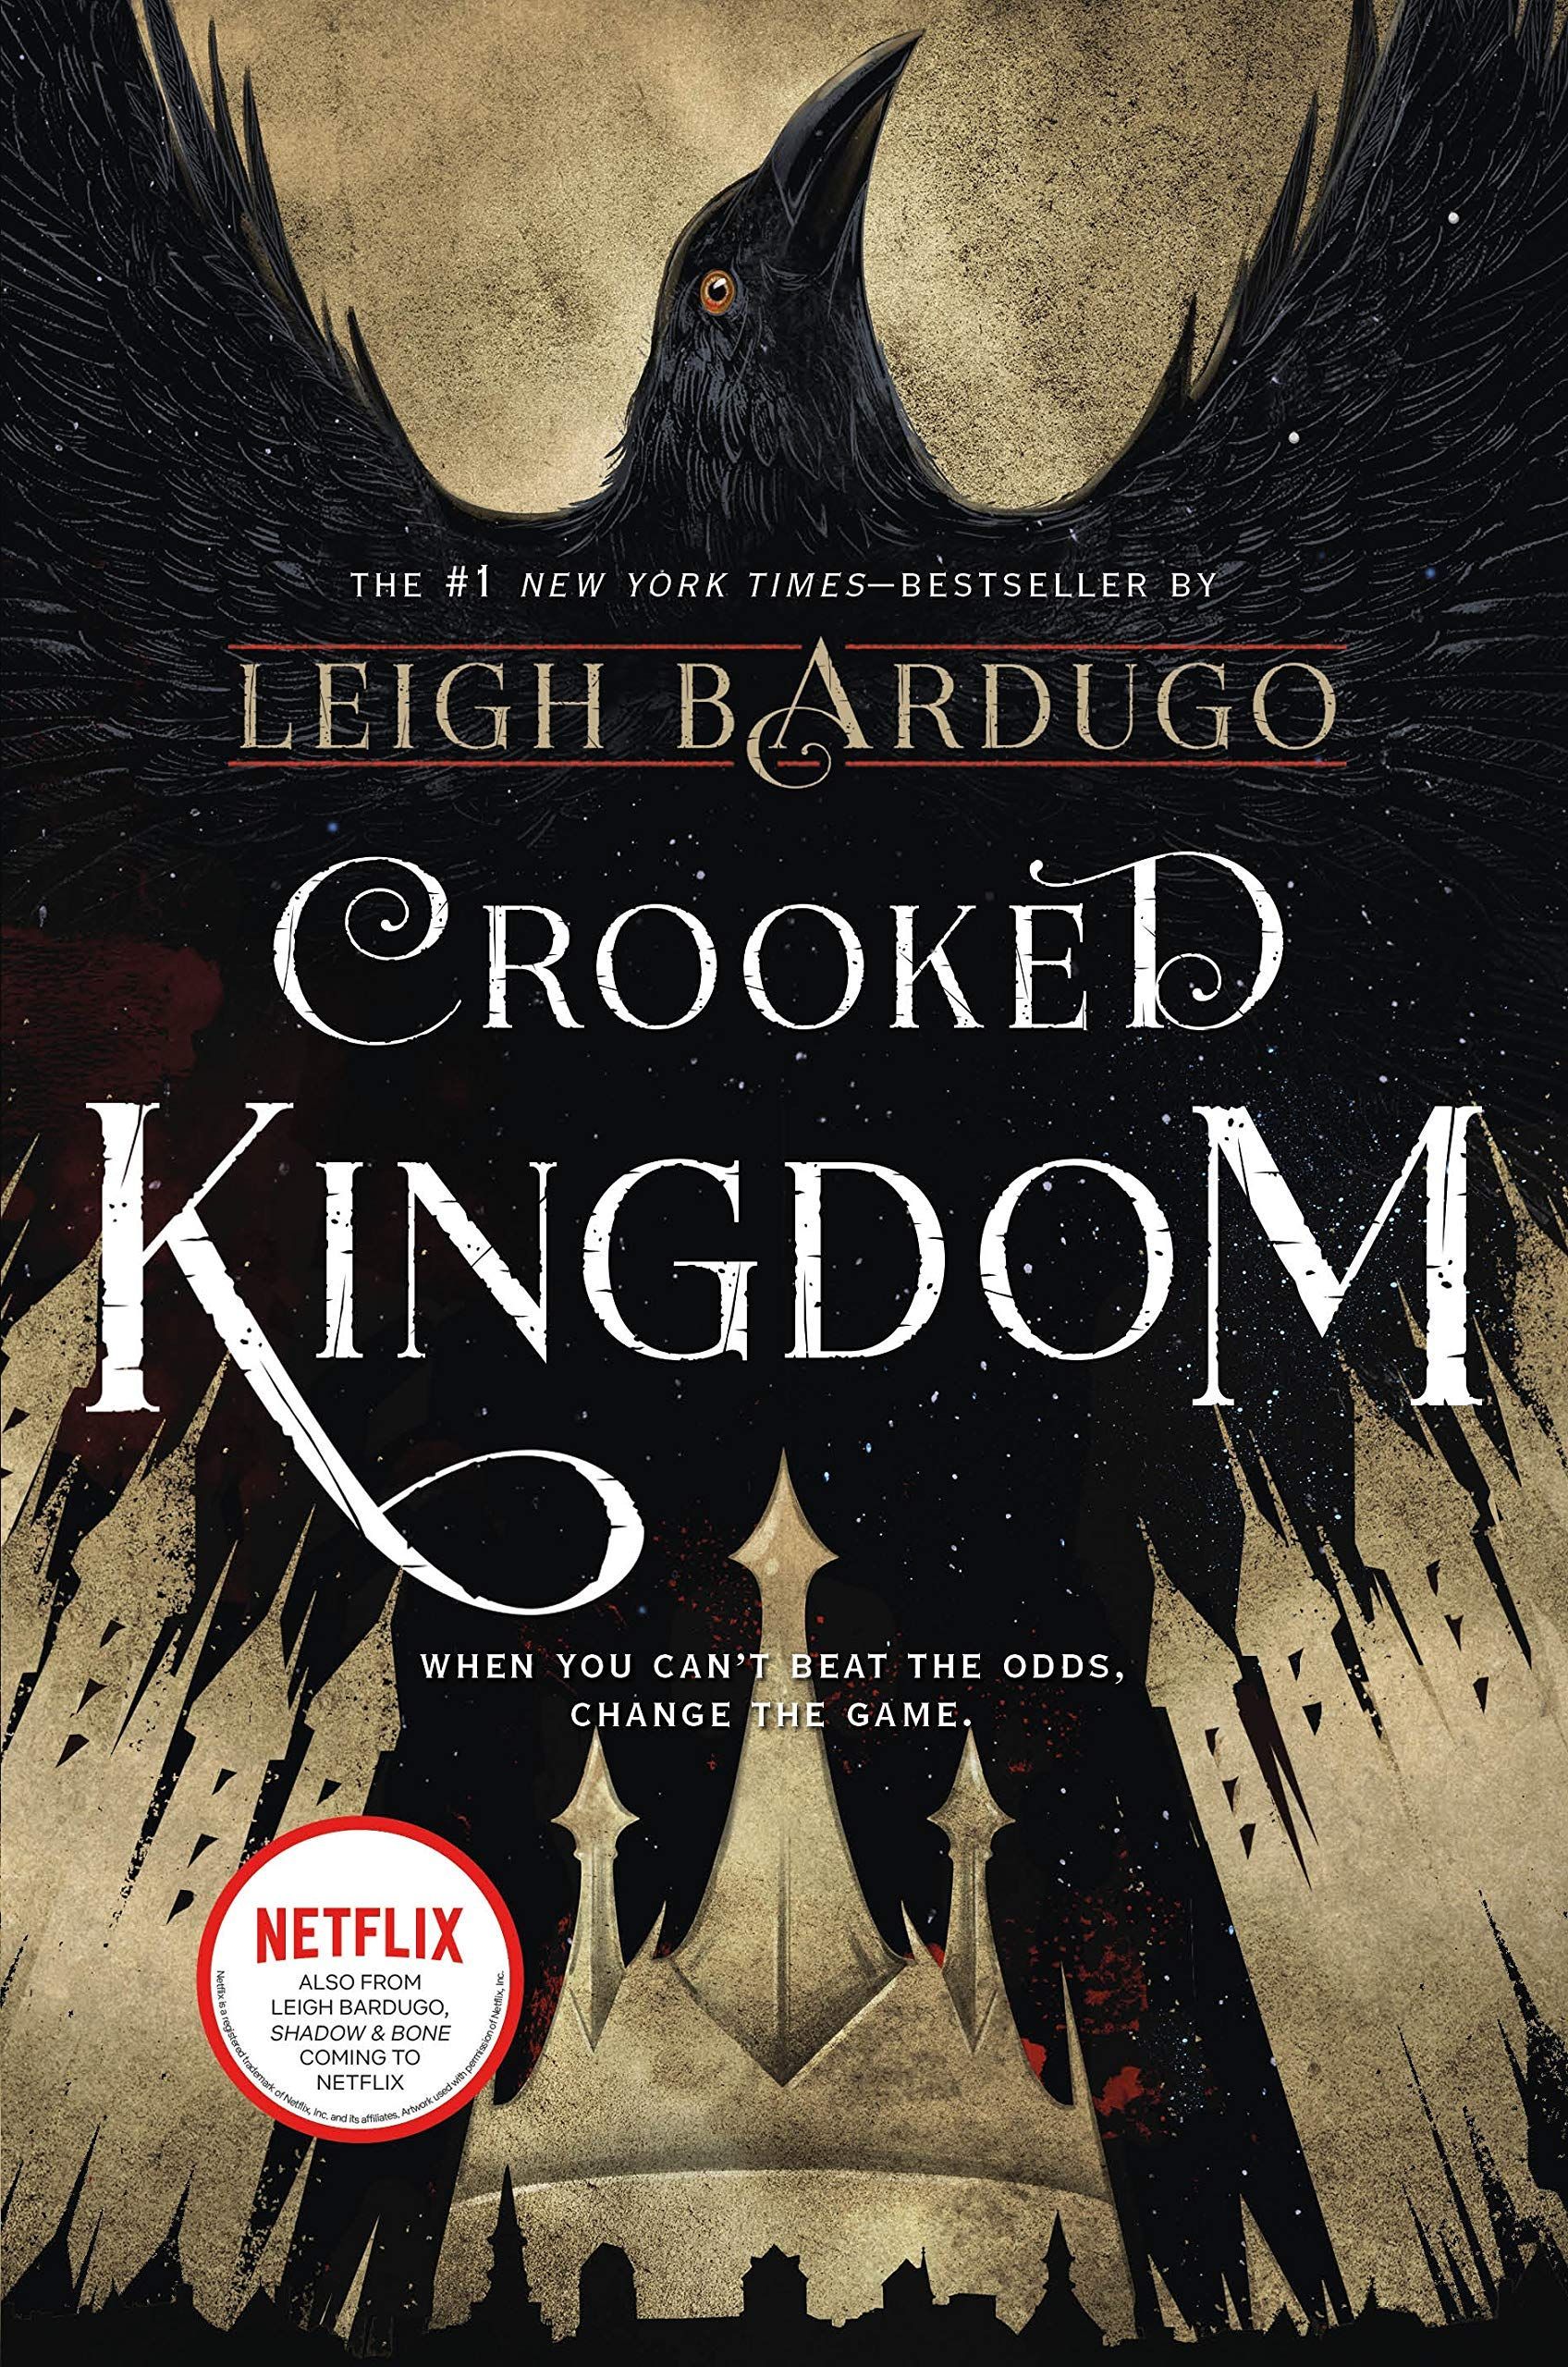 "Crooked Kingdom"